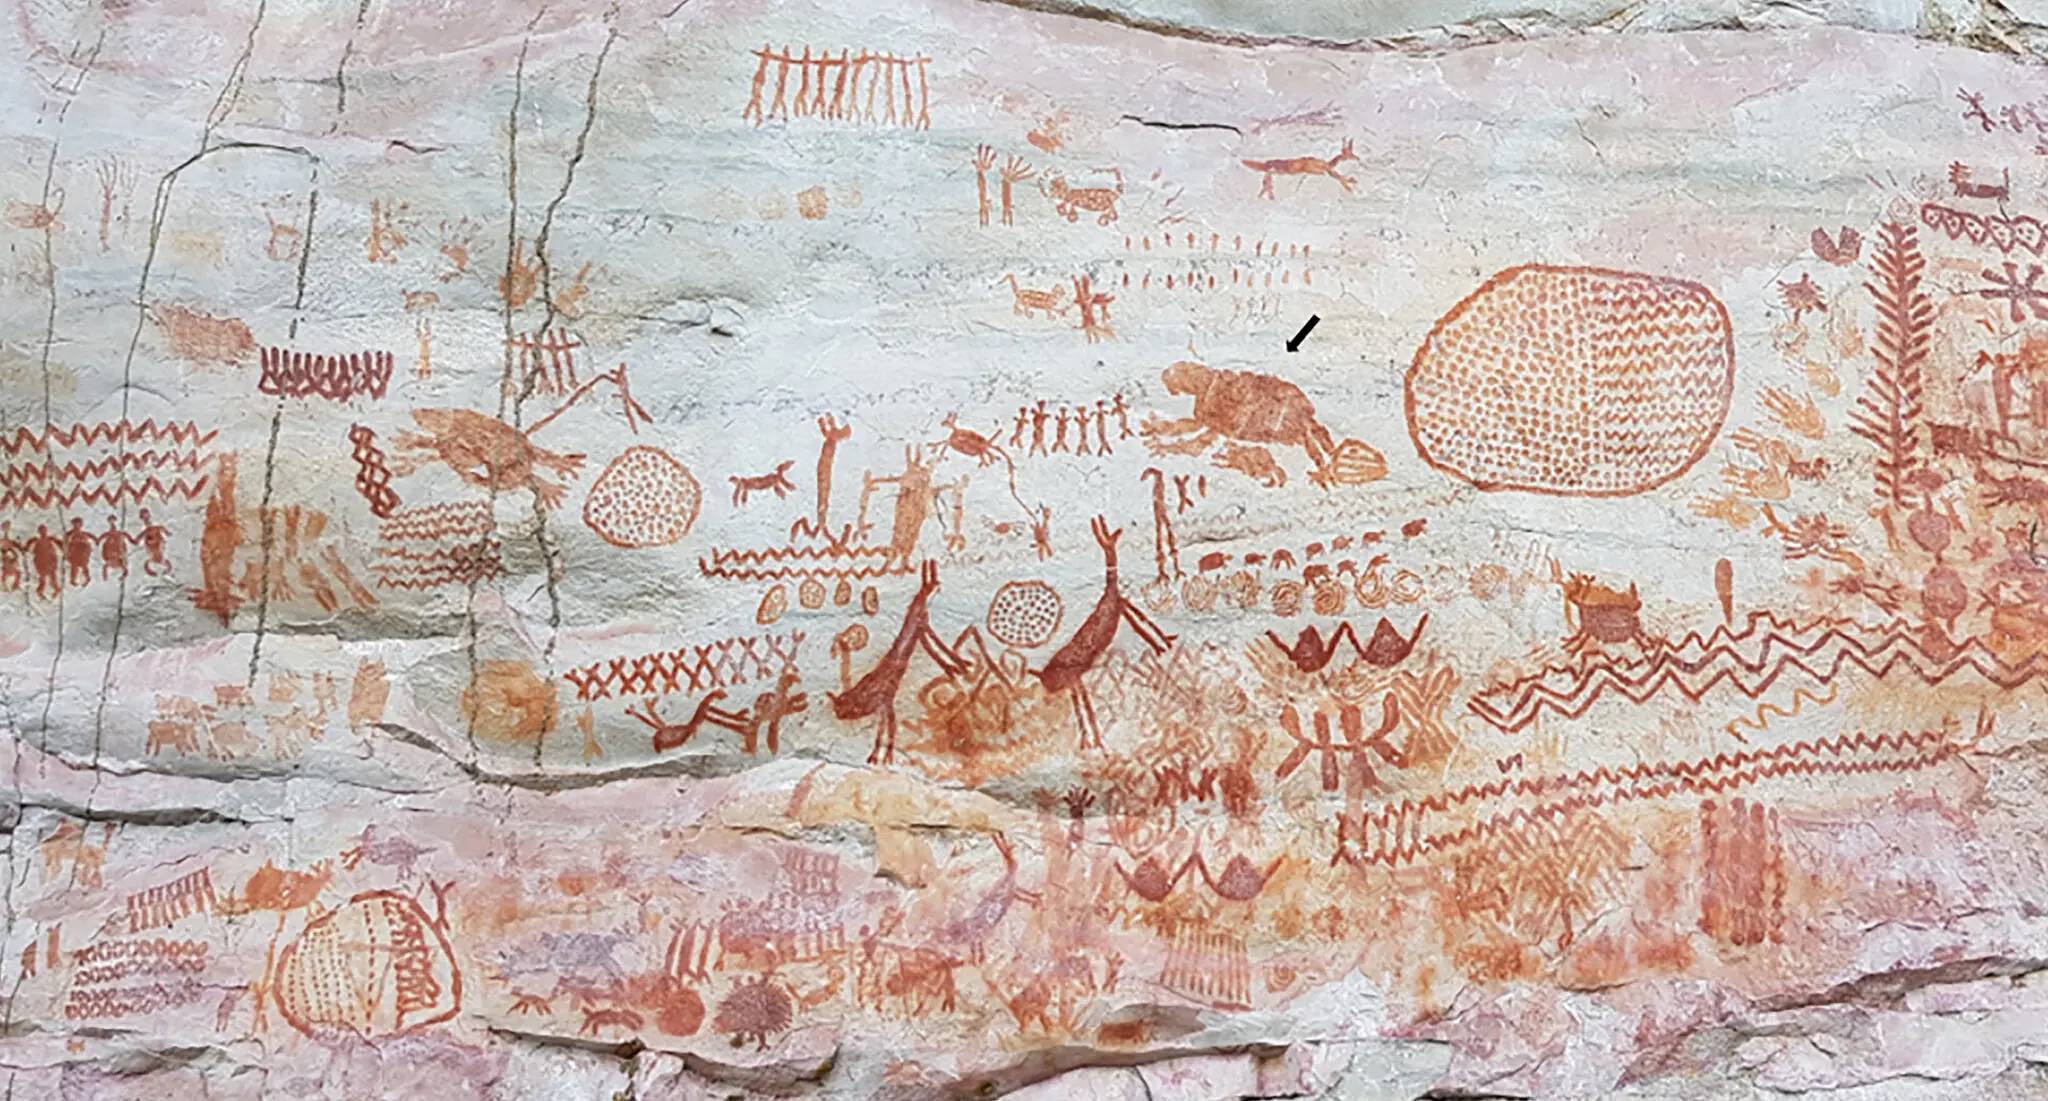 پستانداران منقرض شده عصر یخبندان در نقاشی دیواری آمازون